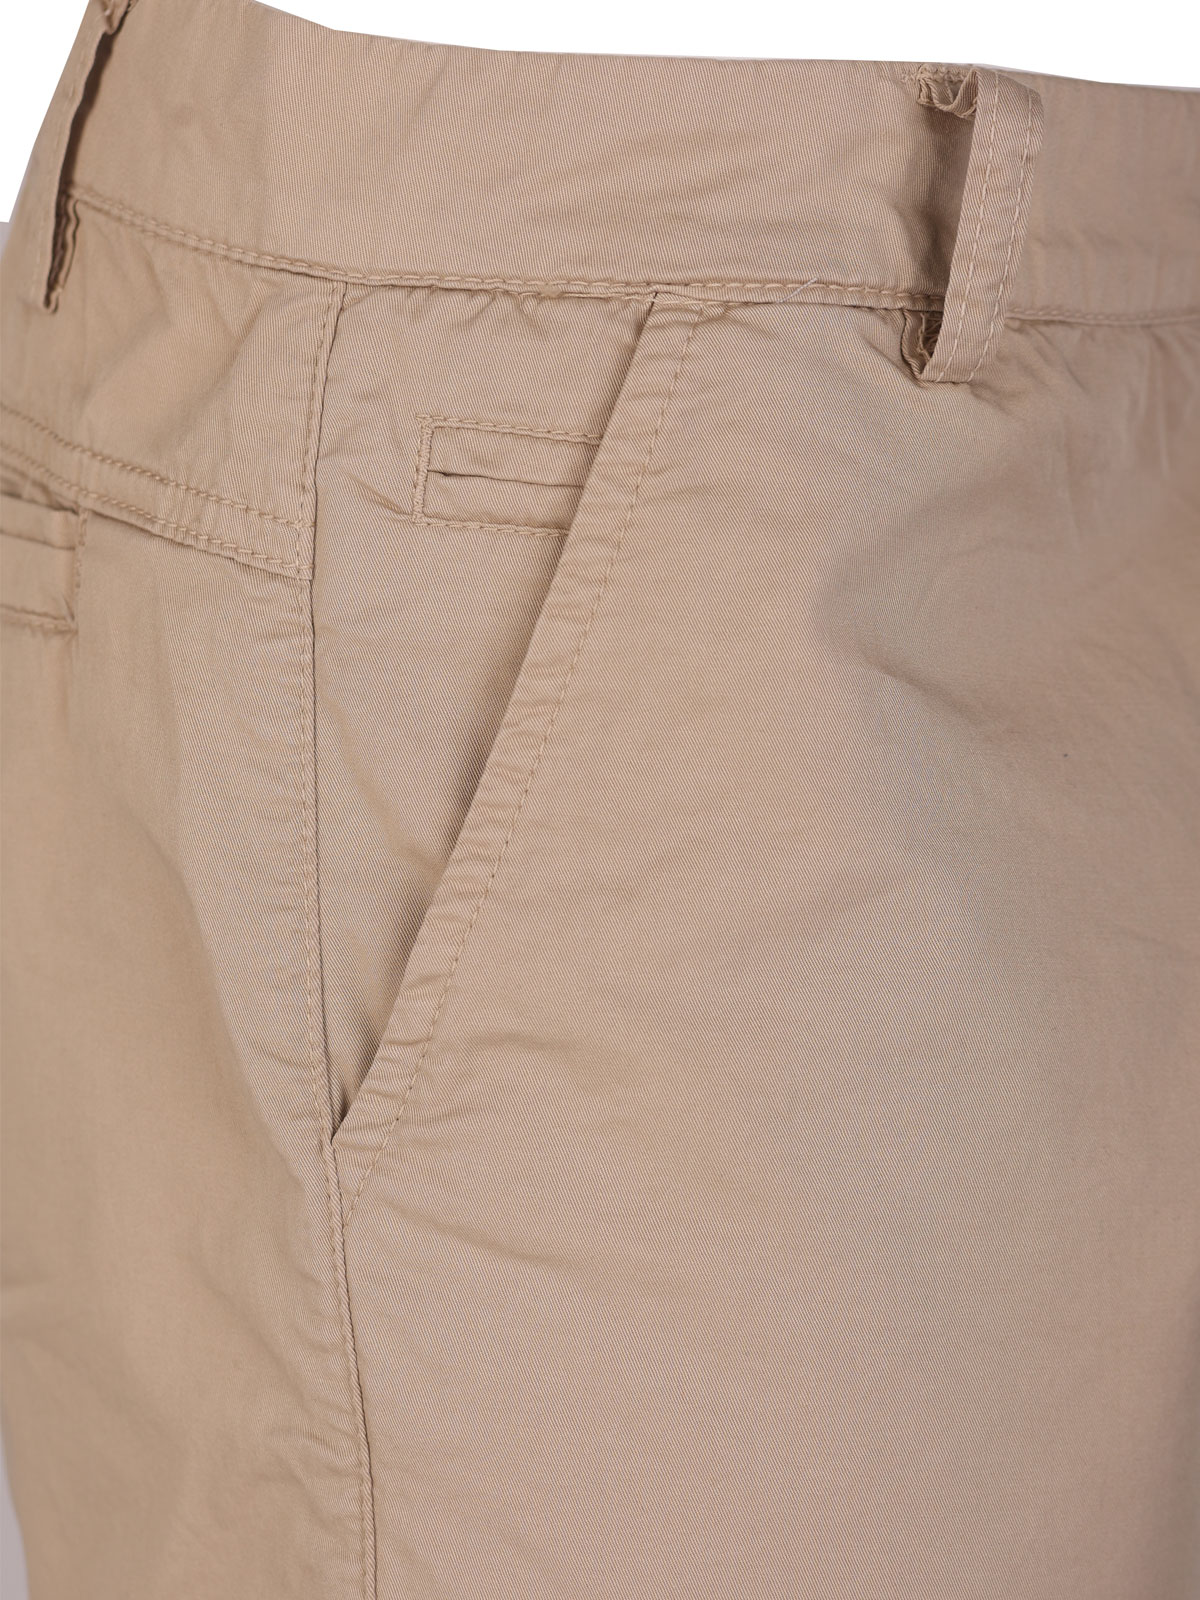 Κοντό παντελόνι σε μπεζ χρώμα - 67095 € 43.87 img2